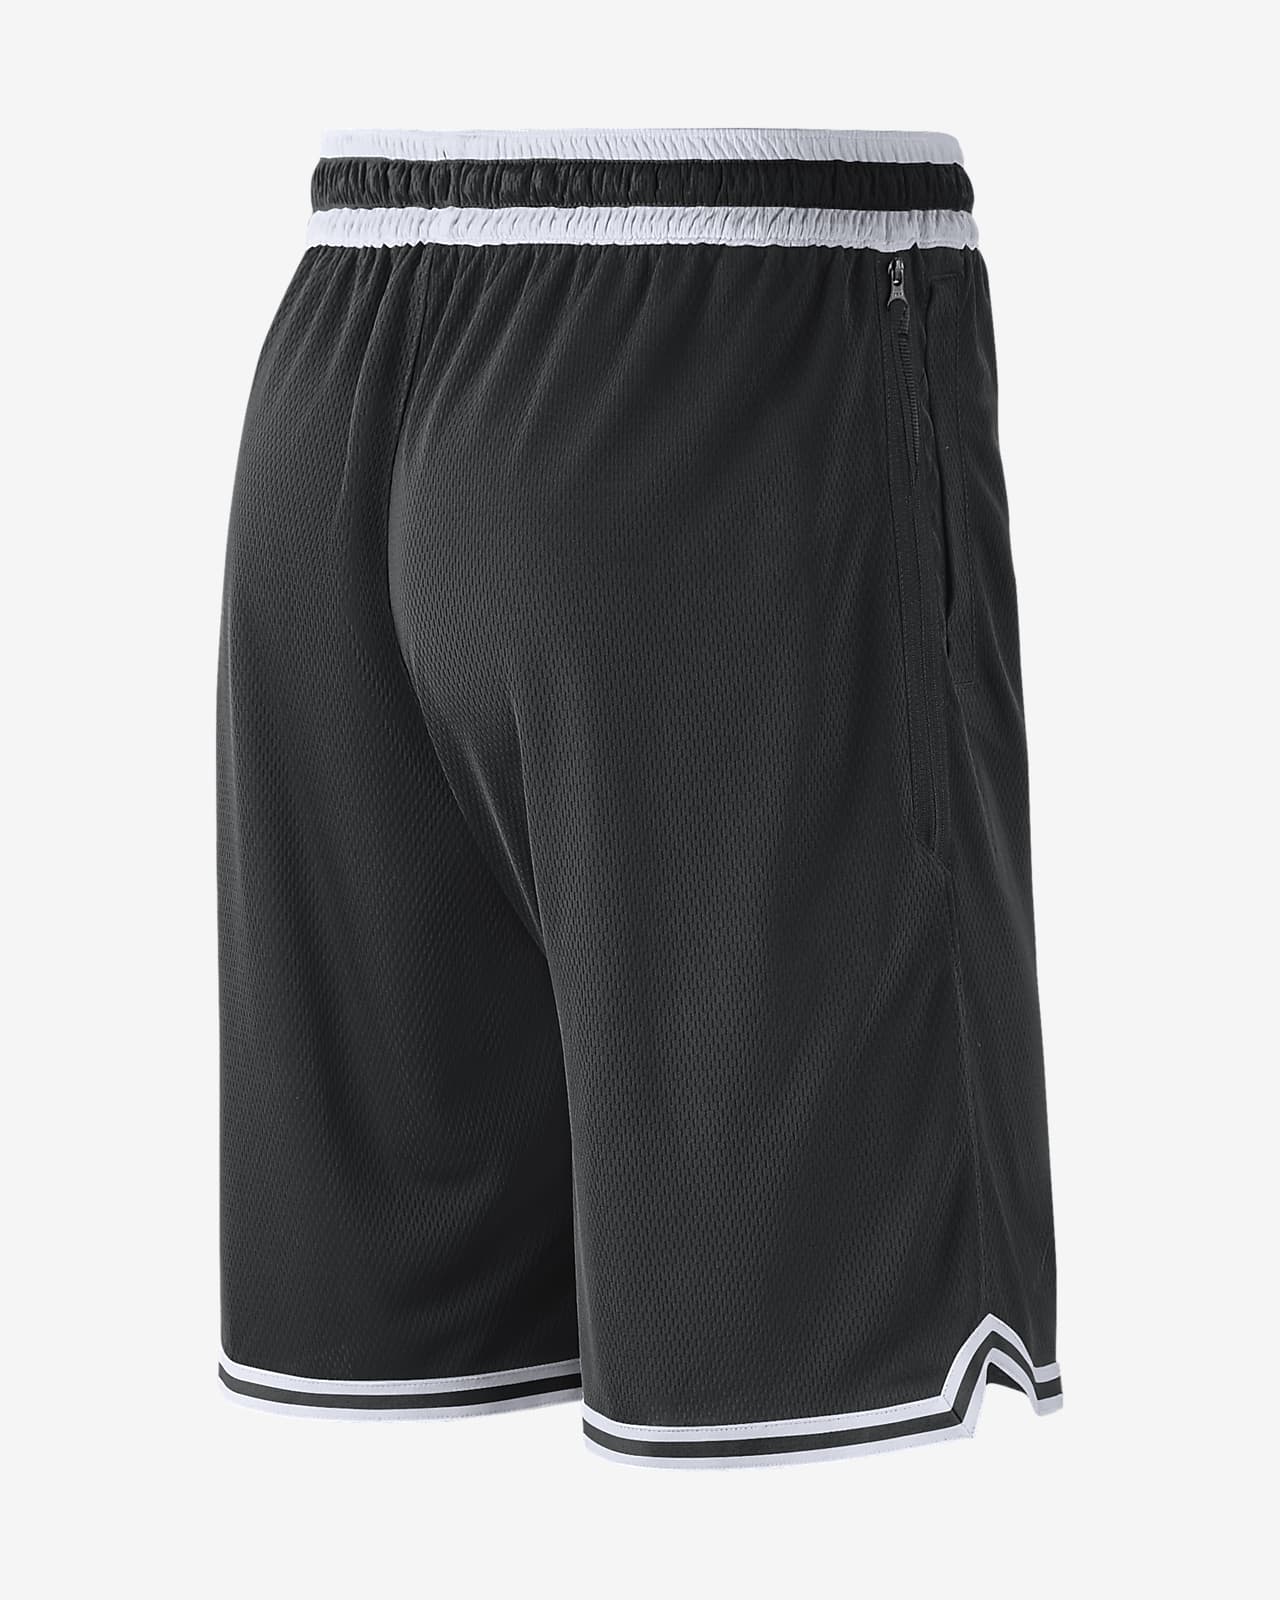 Brooklyn Nets DNA Men's Nike Dri-FIT NBA Shorts